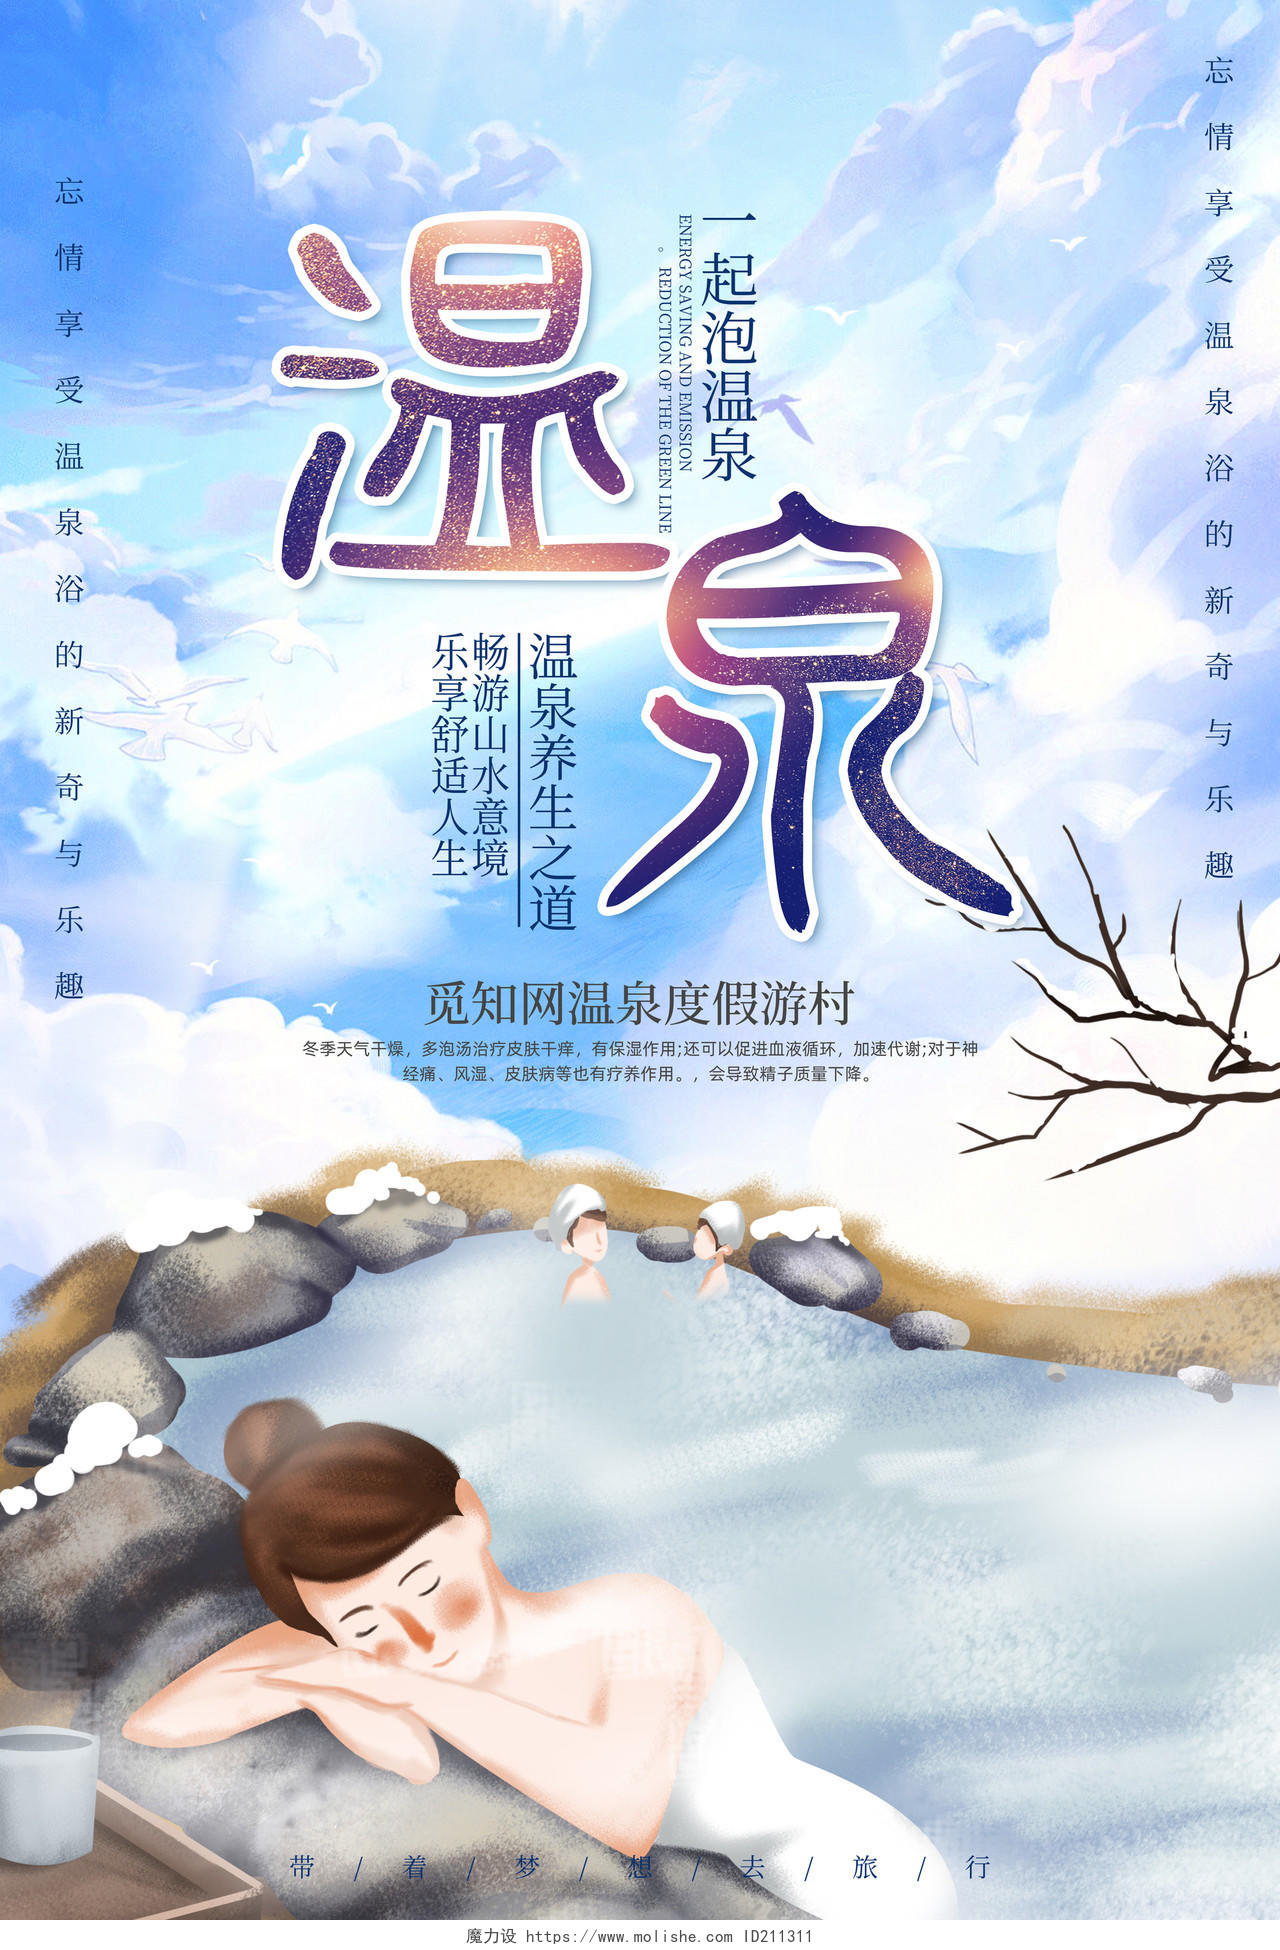 清新插画风大气旅游温泉宣传海报图片